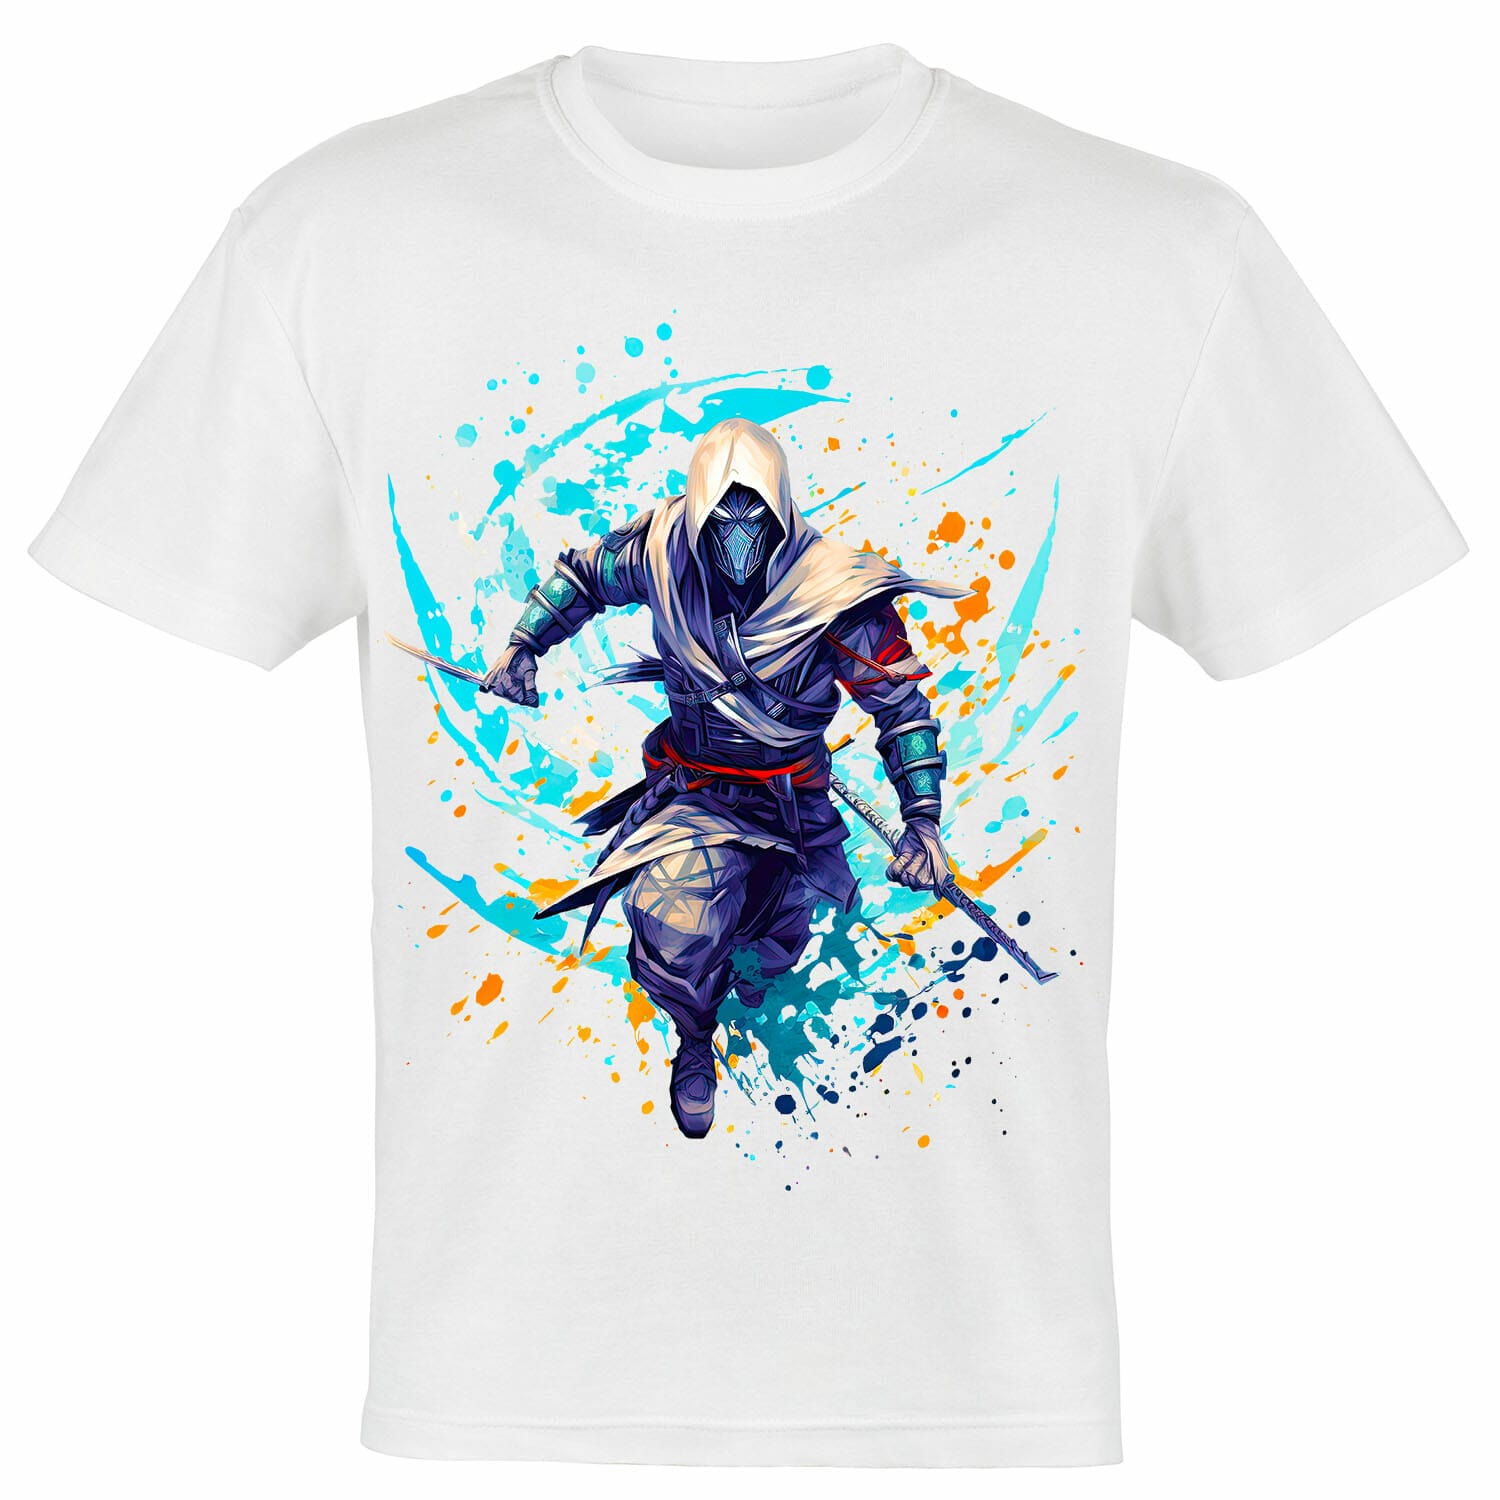 ninja splash effect tshirt design